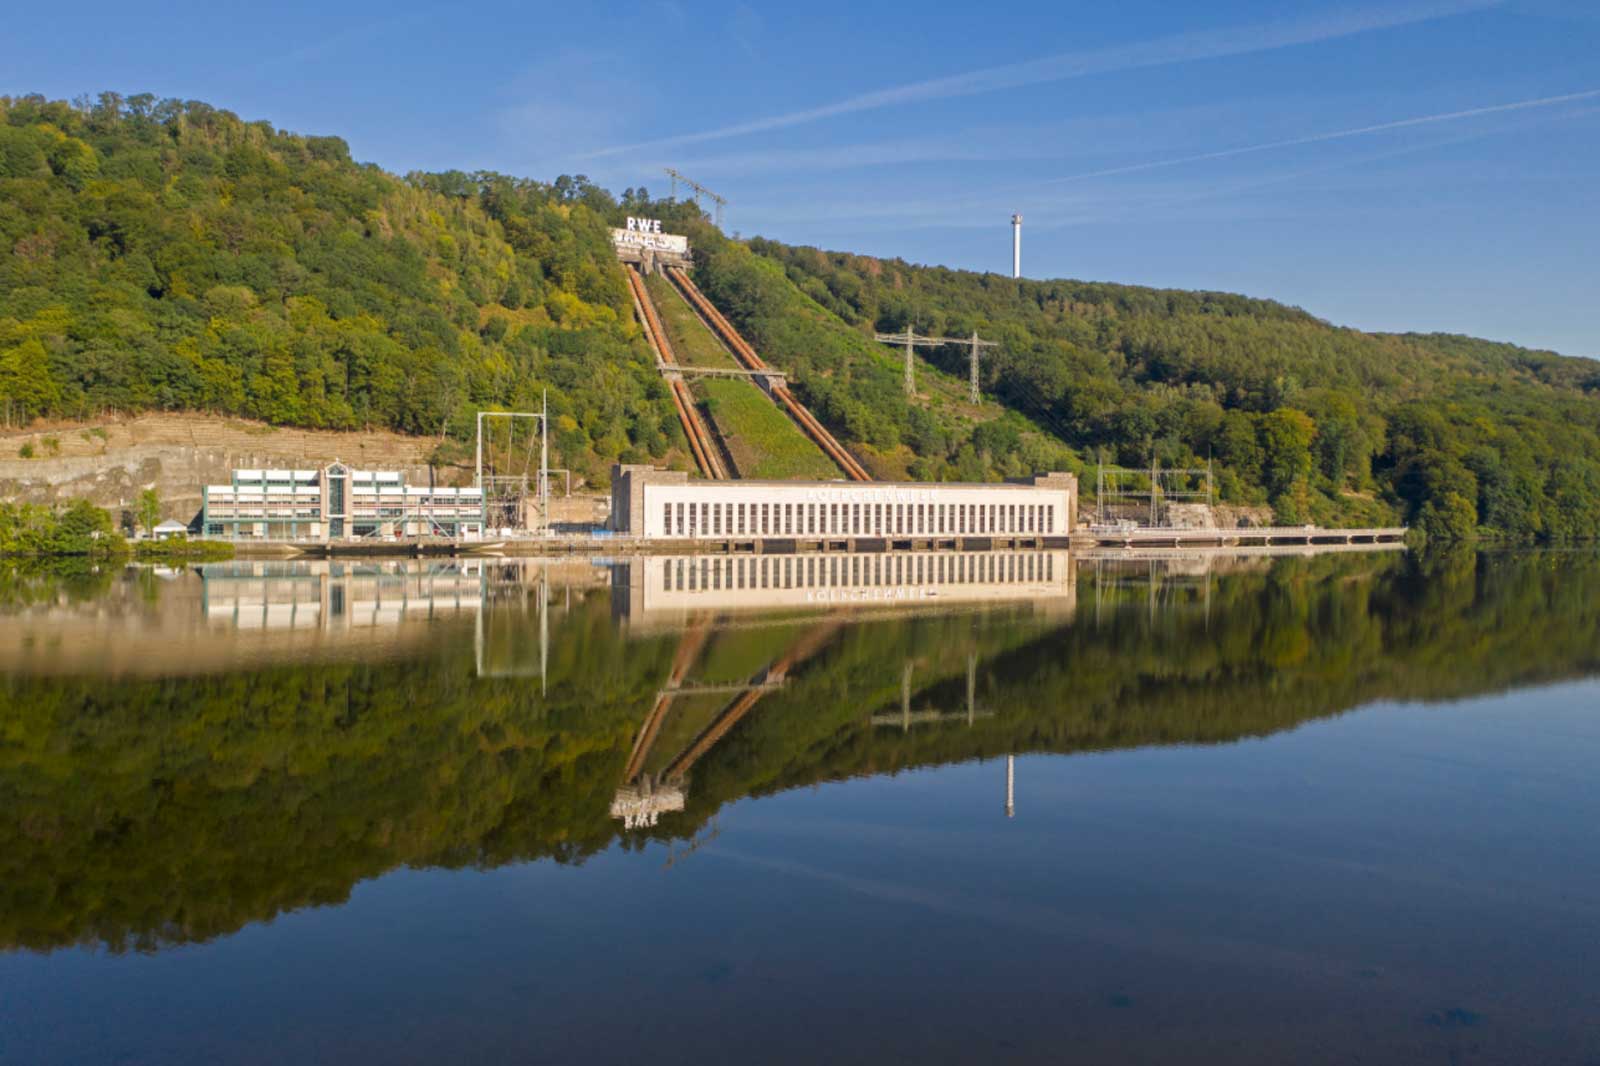 Das Wasserkraftportfolio bei RWE | Erneuerbare Energien entdecken bei RWE